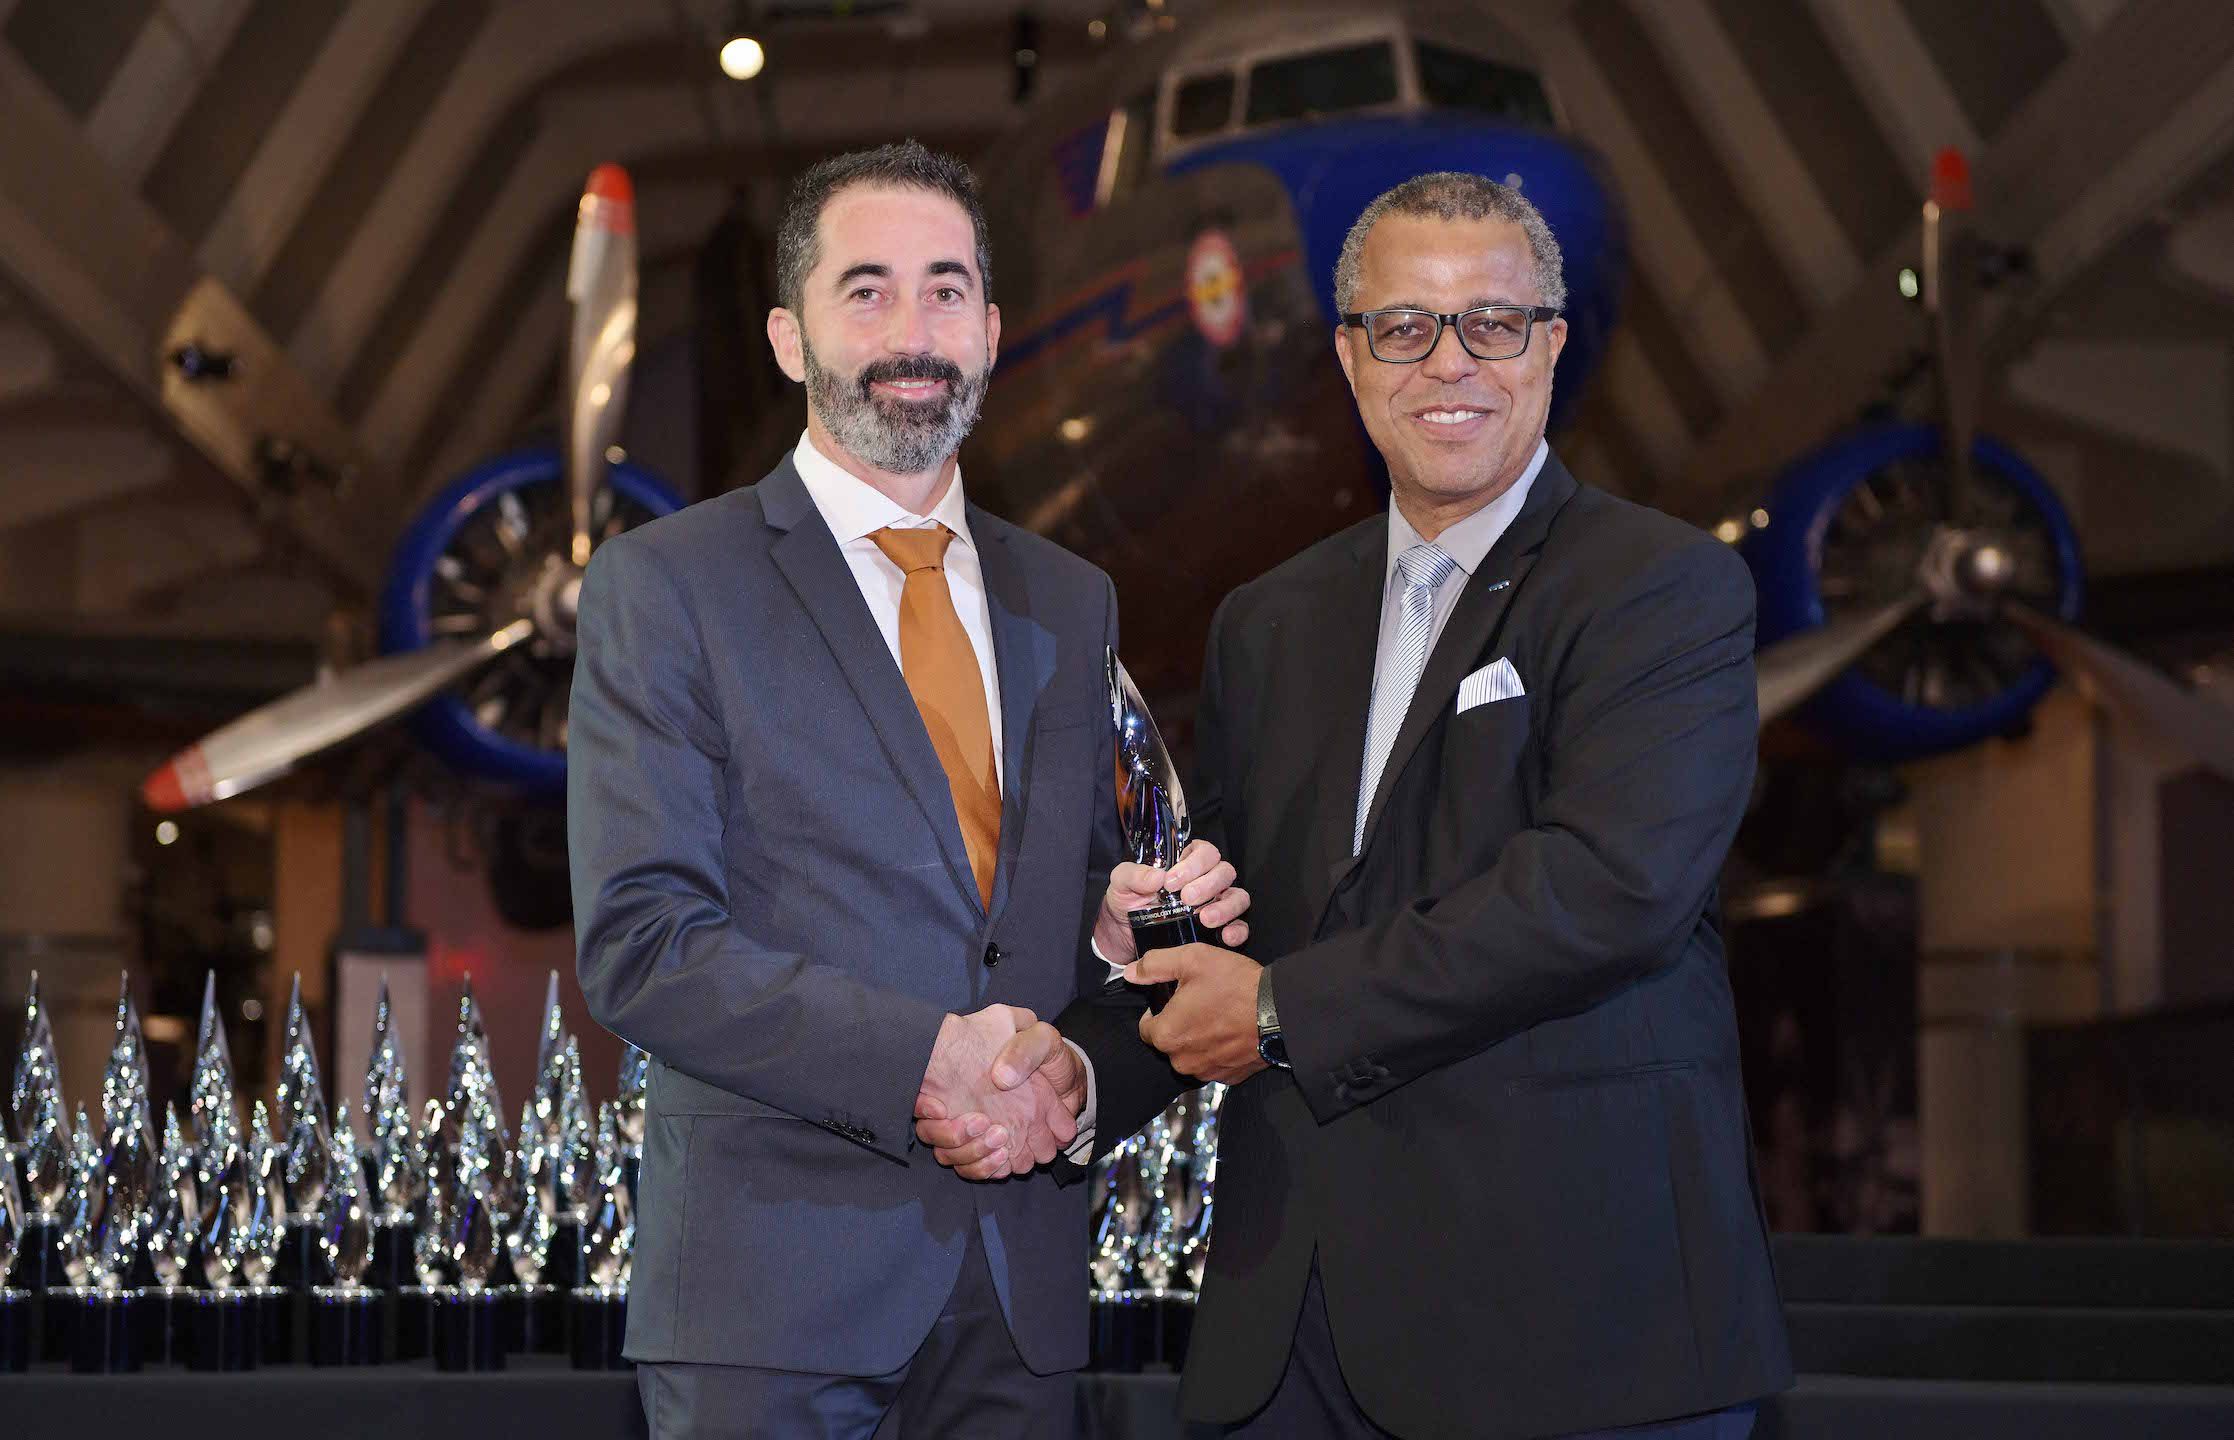 El profesor de la CEU UCH Nicolás Montes recibe su premio de manos del director de los Henry Ford Technology Awards, Ken Washington.